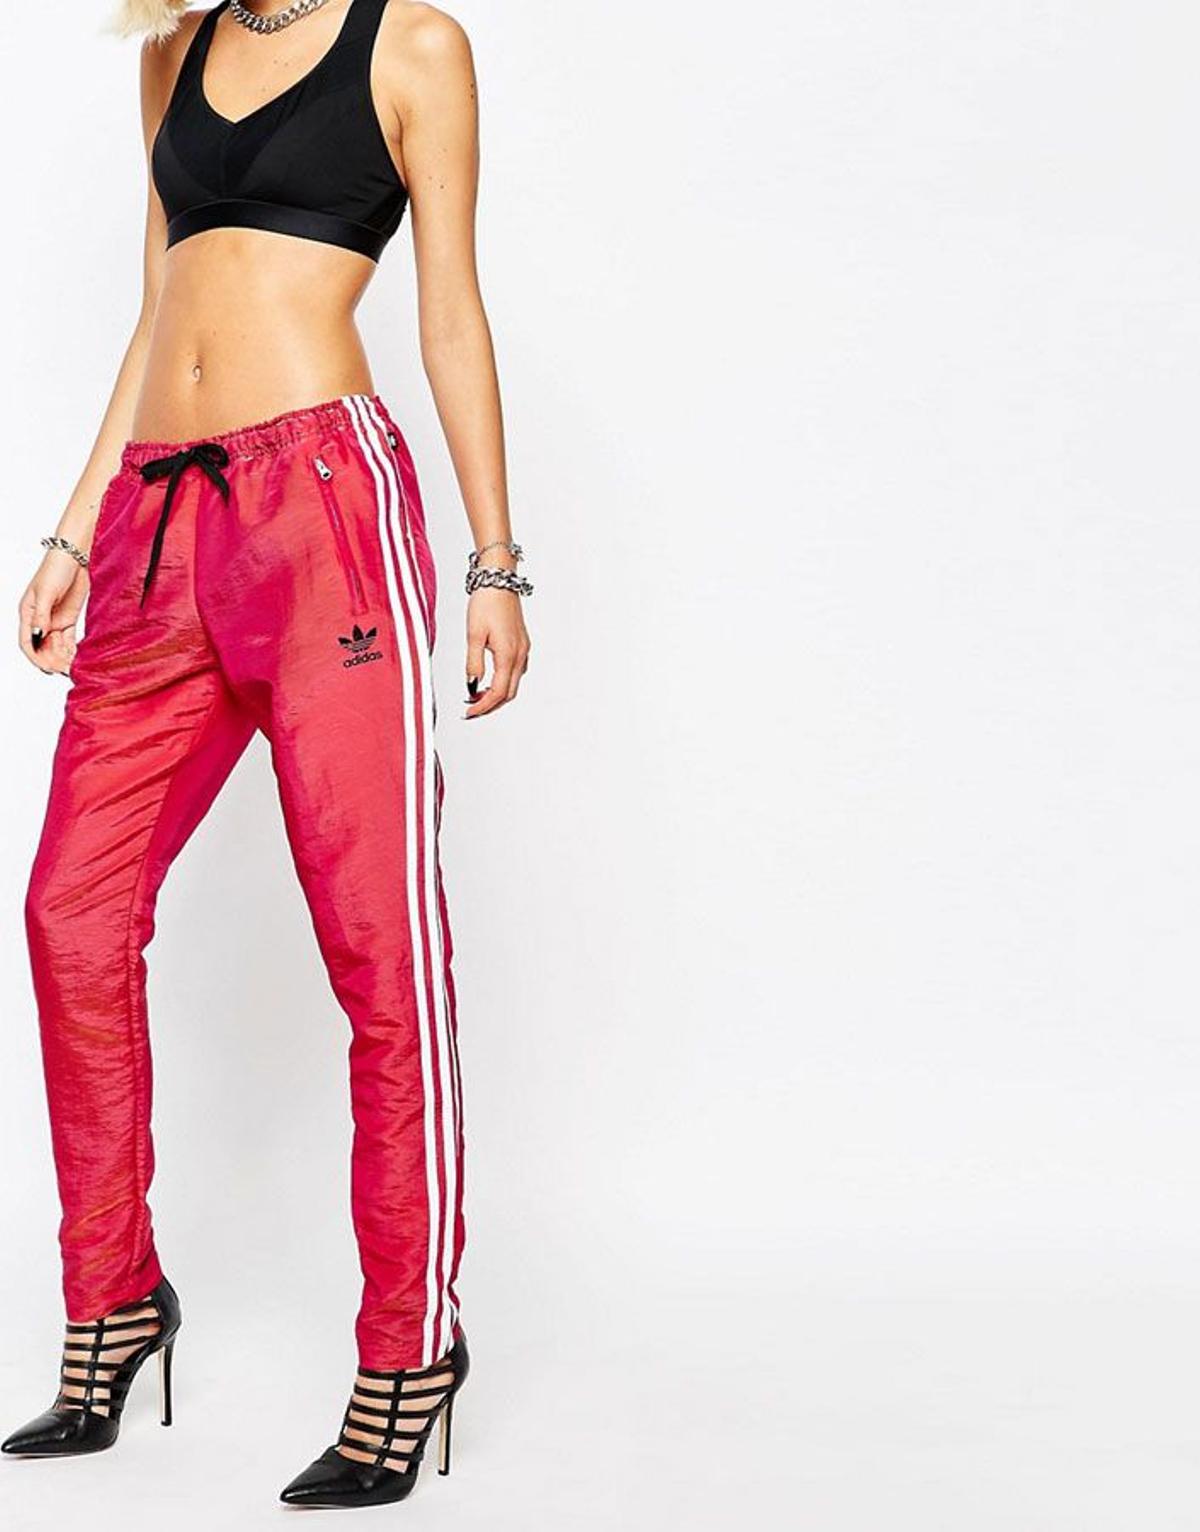 Pantalón de Adidas diseñado por Rita Ora